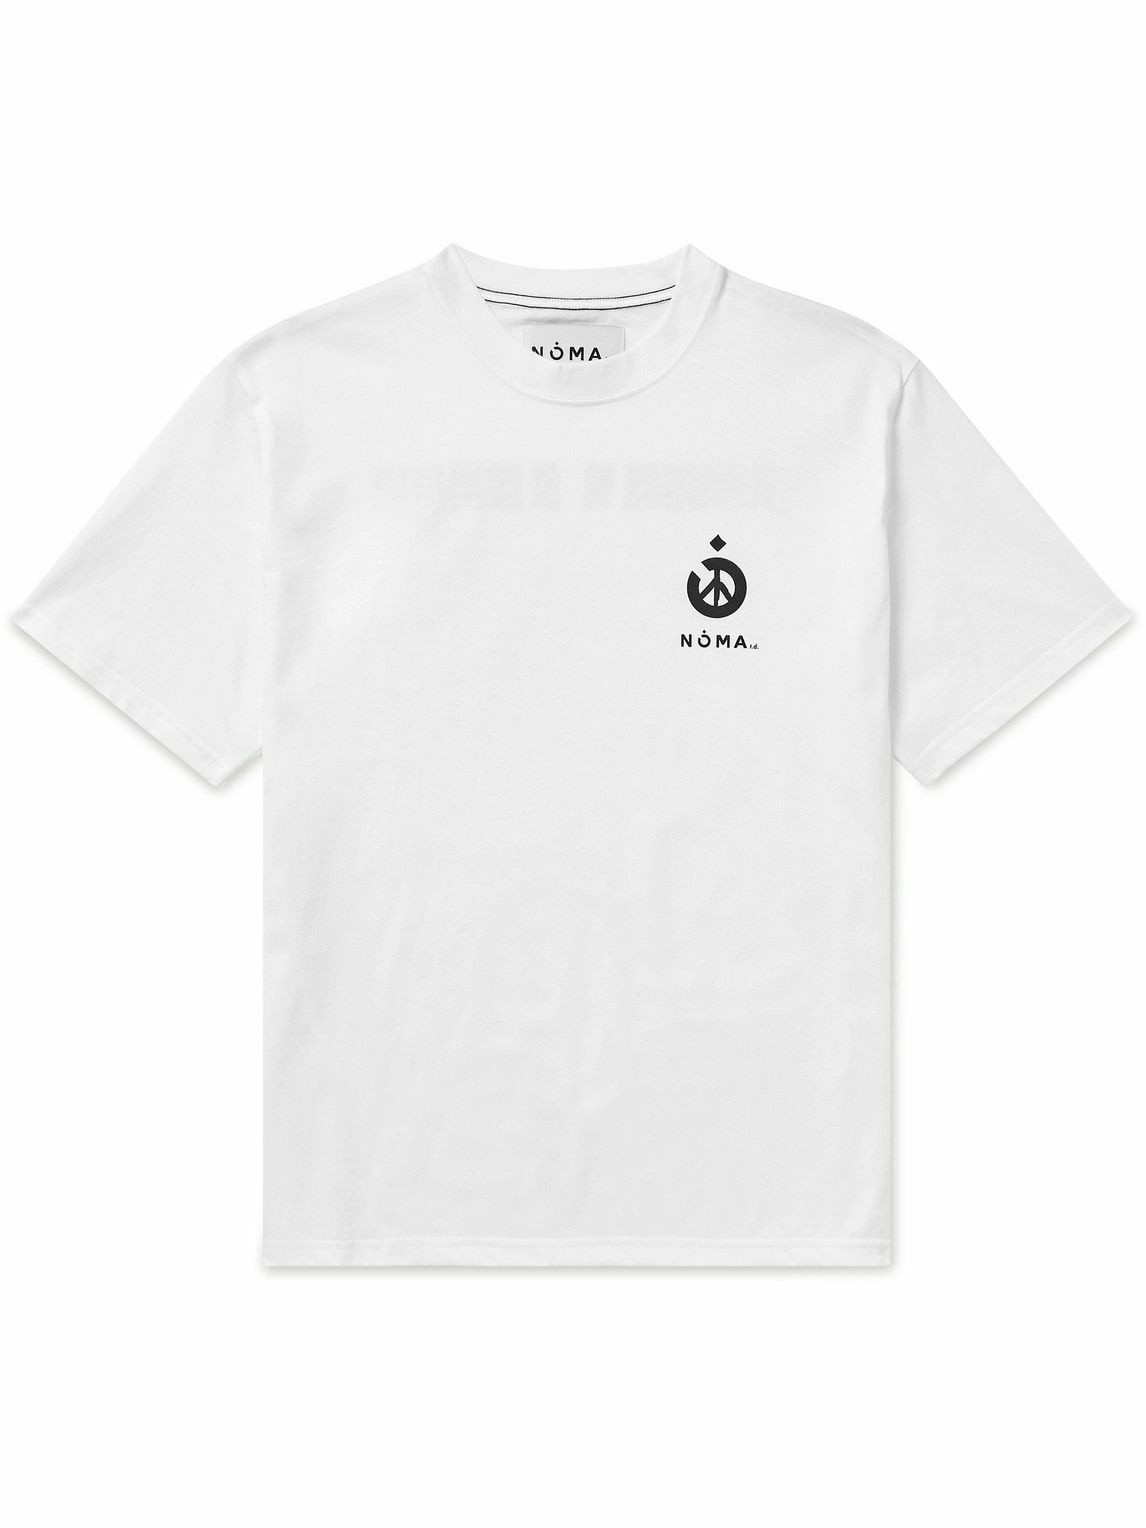 NOMA t.d. - Logo-Print Cotton-Jersey T-Shirt - White NOMA t.d.